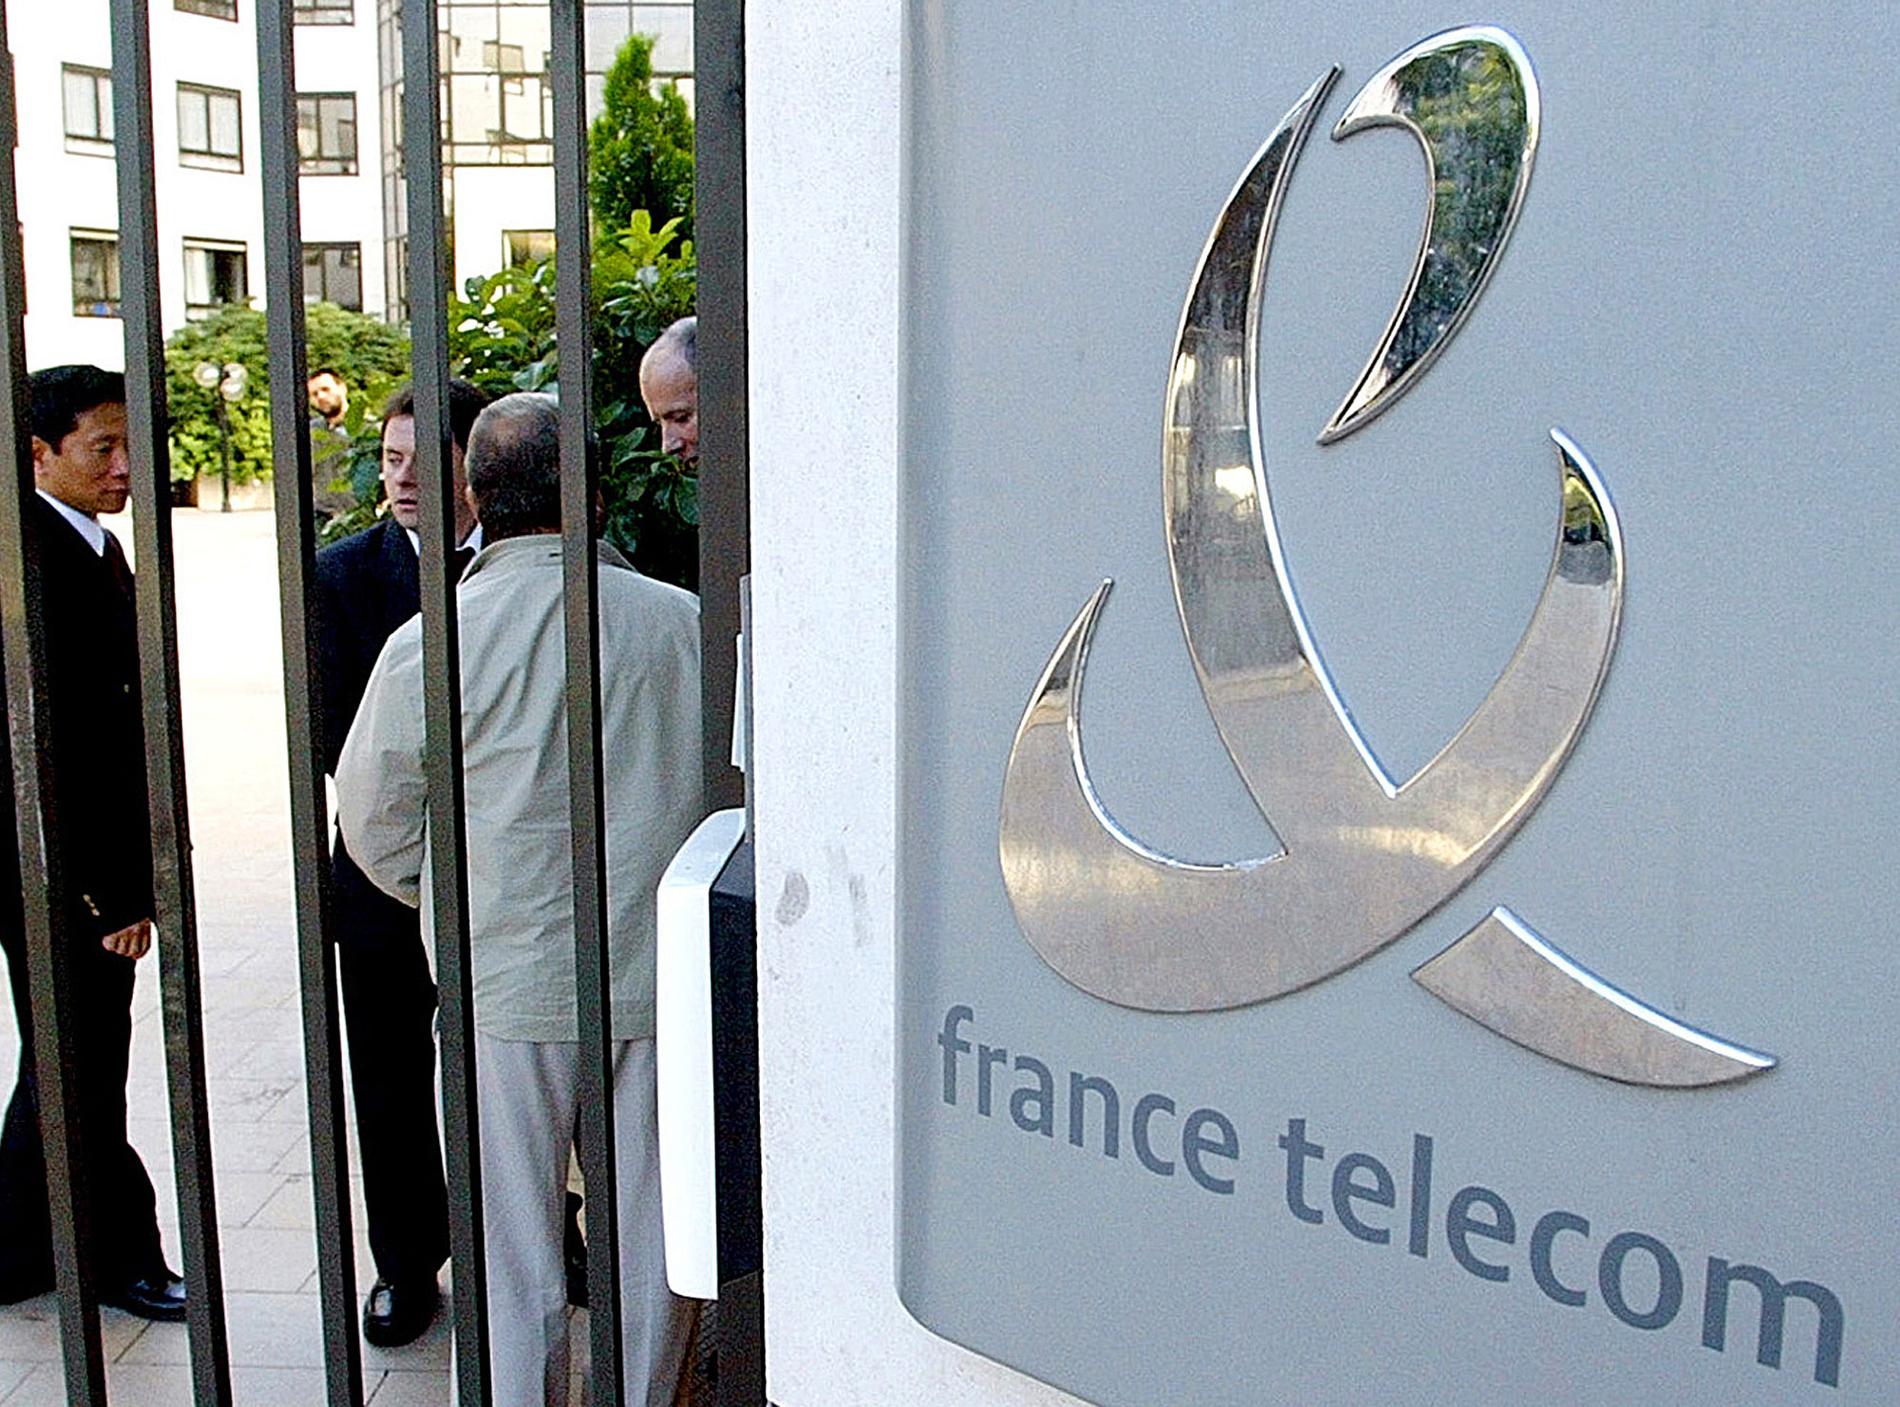 Franska telejätten France Telecom har drabbats hårt av en självmordsvåg. Sju anställda har tagit sina liv de senaste två månaderna. Nu kallar regeringen företaget till krismöte.